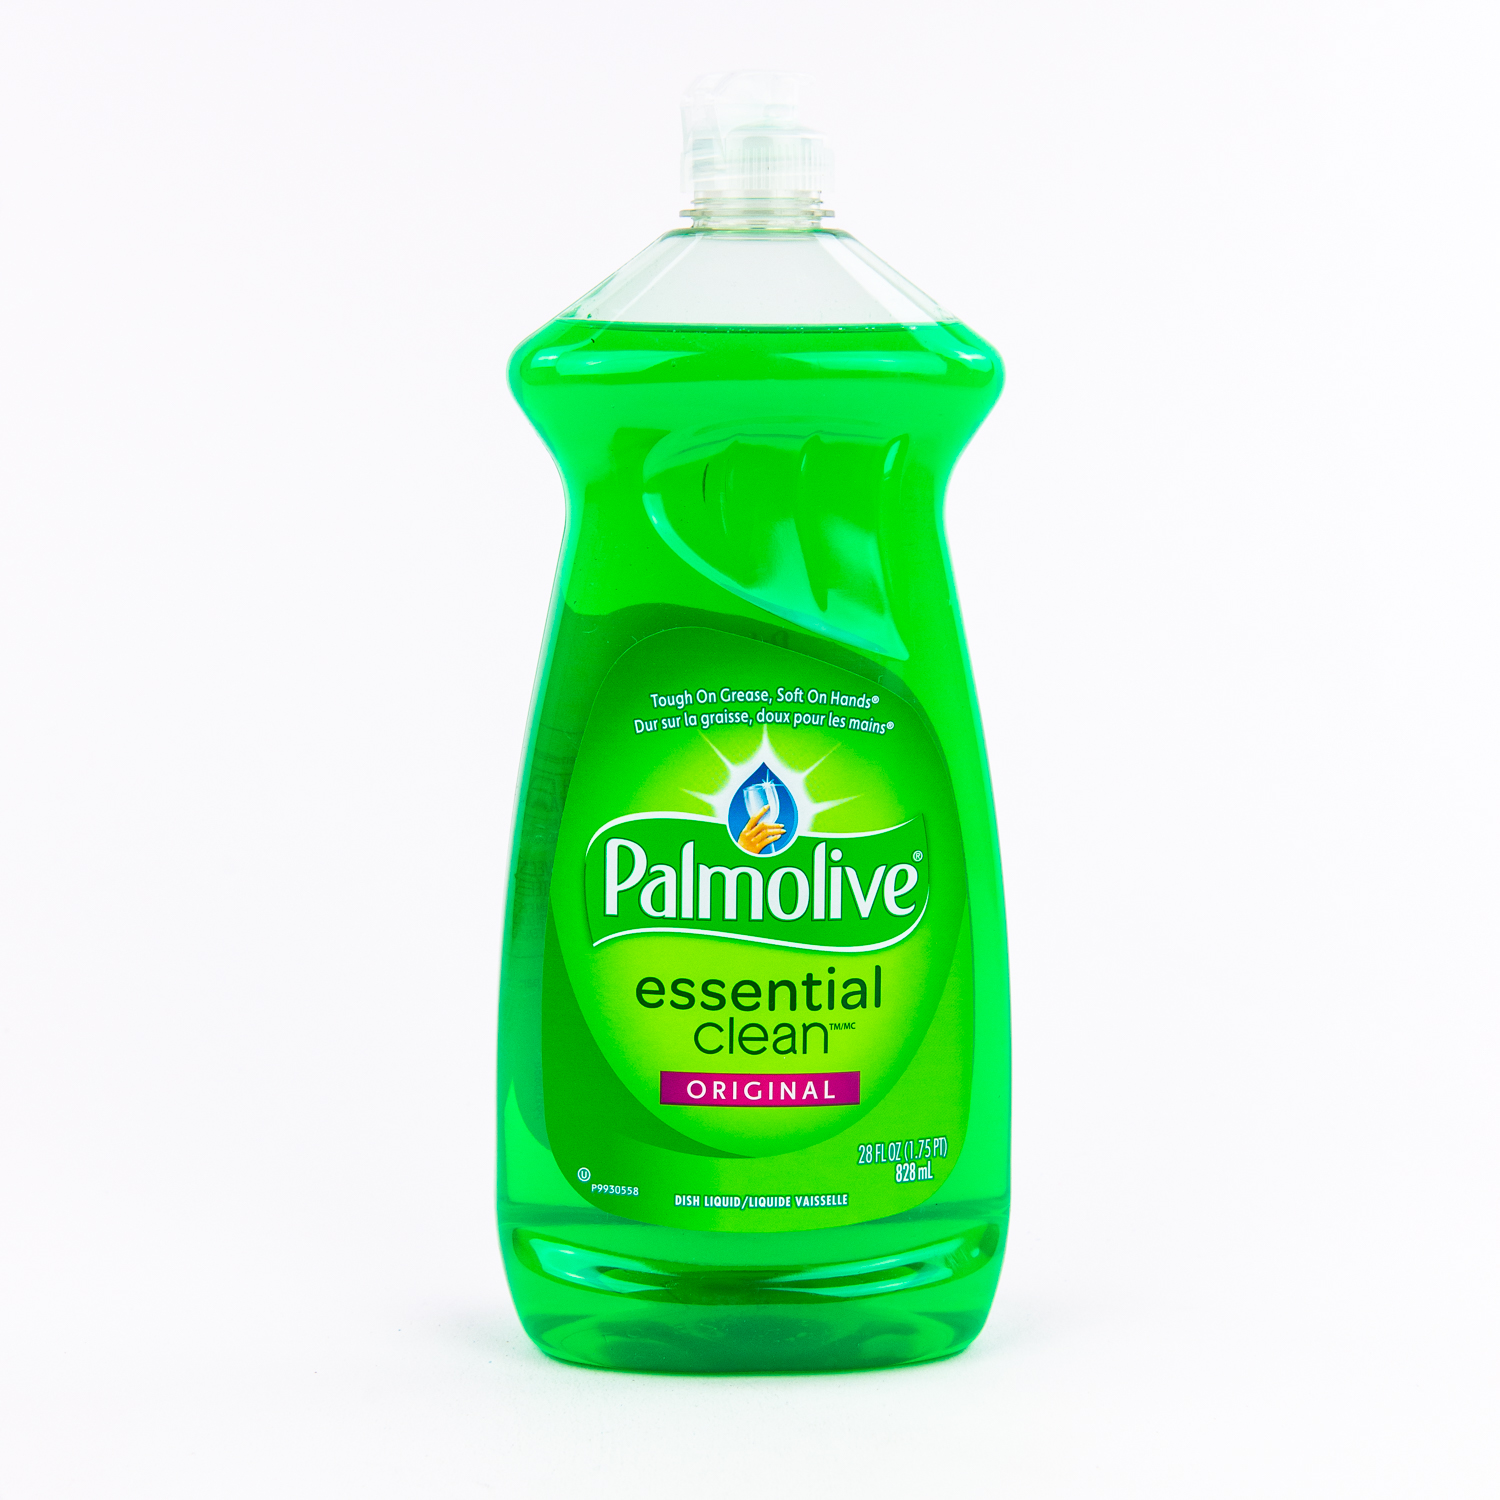 Palmolive Despicable Me Liquid Soap#1 - Savon liquide mains pour enfant